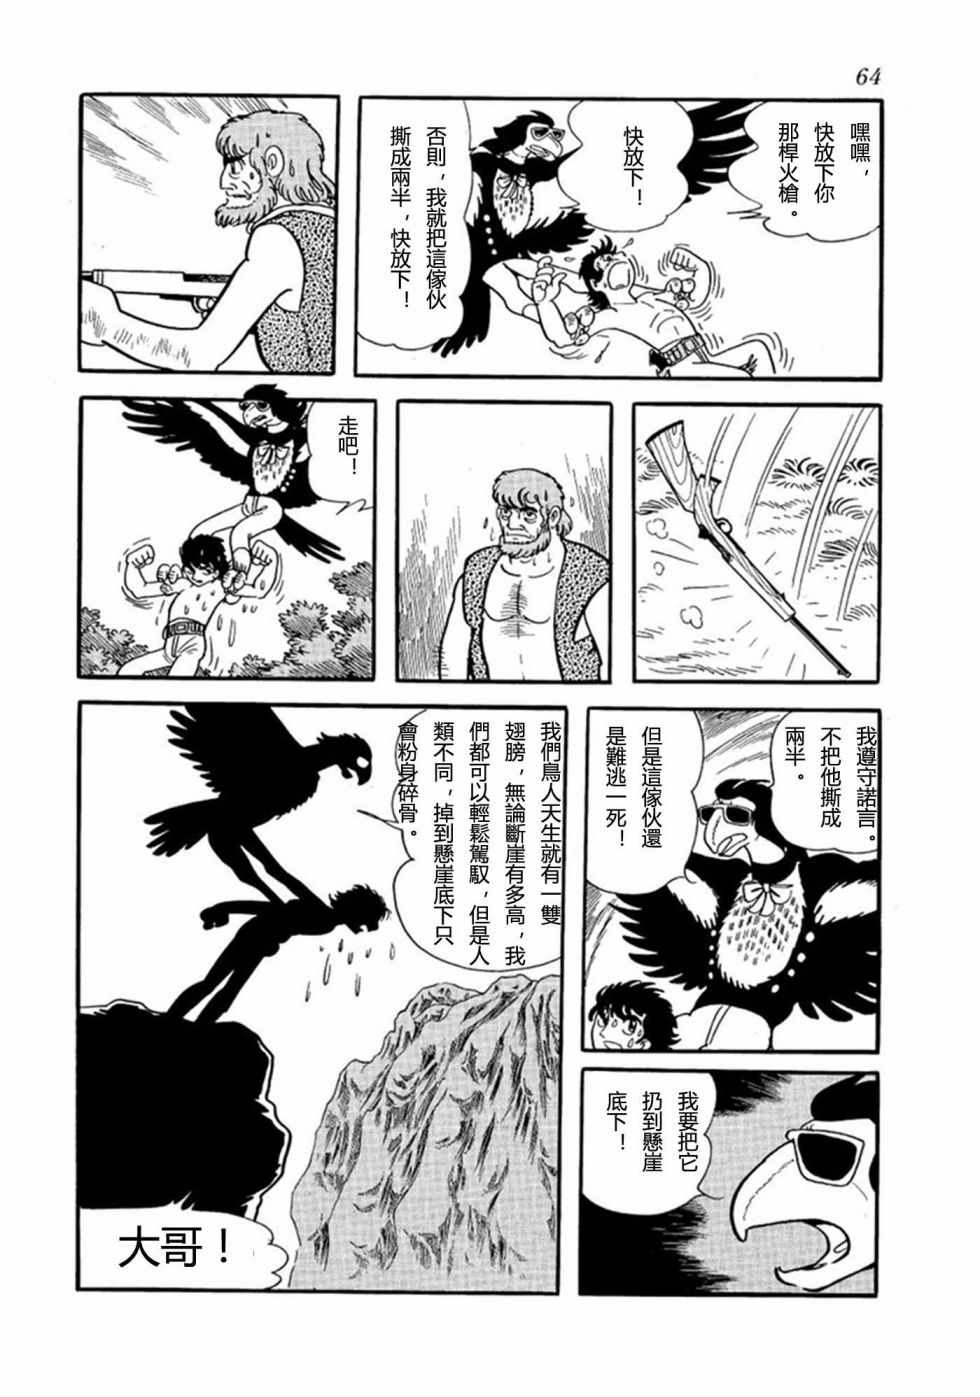 鳥人大系漫畫002卷 第59頁 鳥人大系002卷劇情 看漫畫